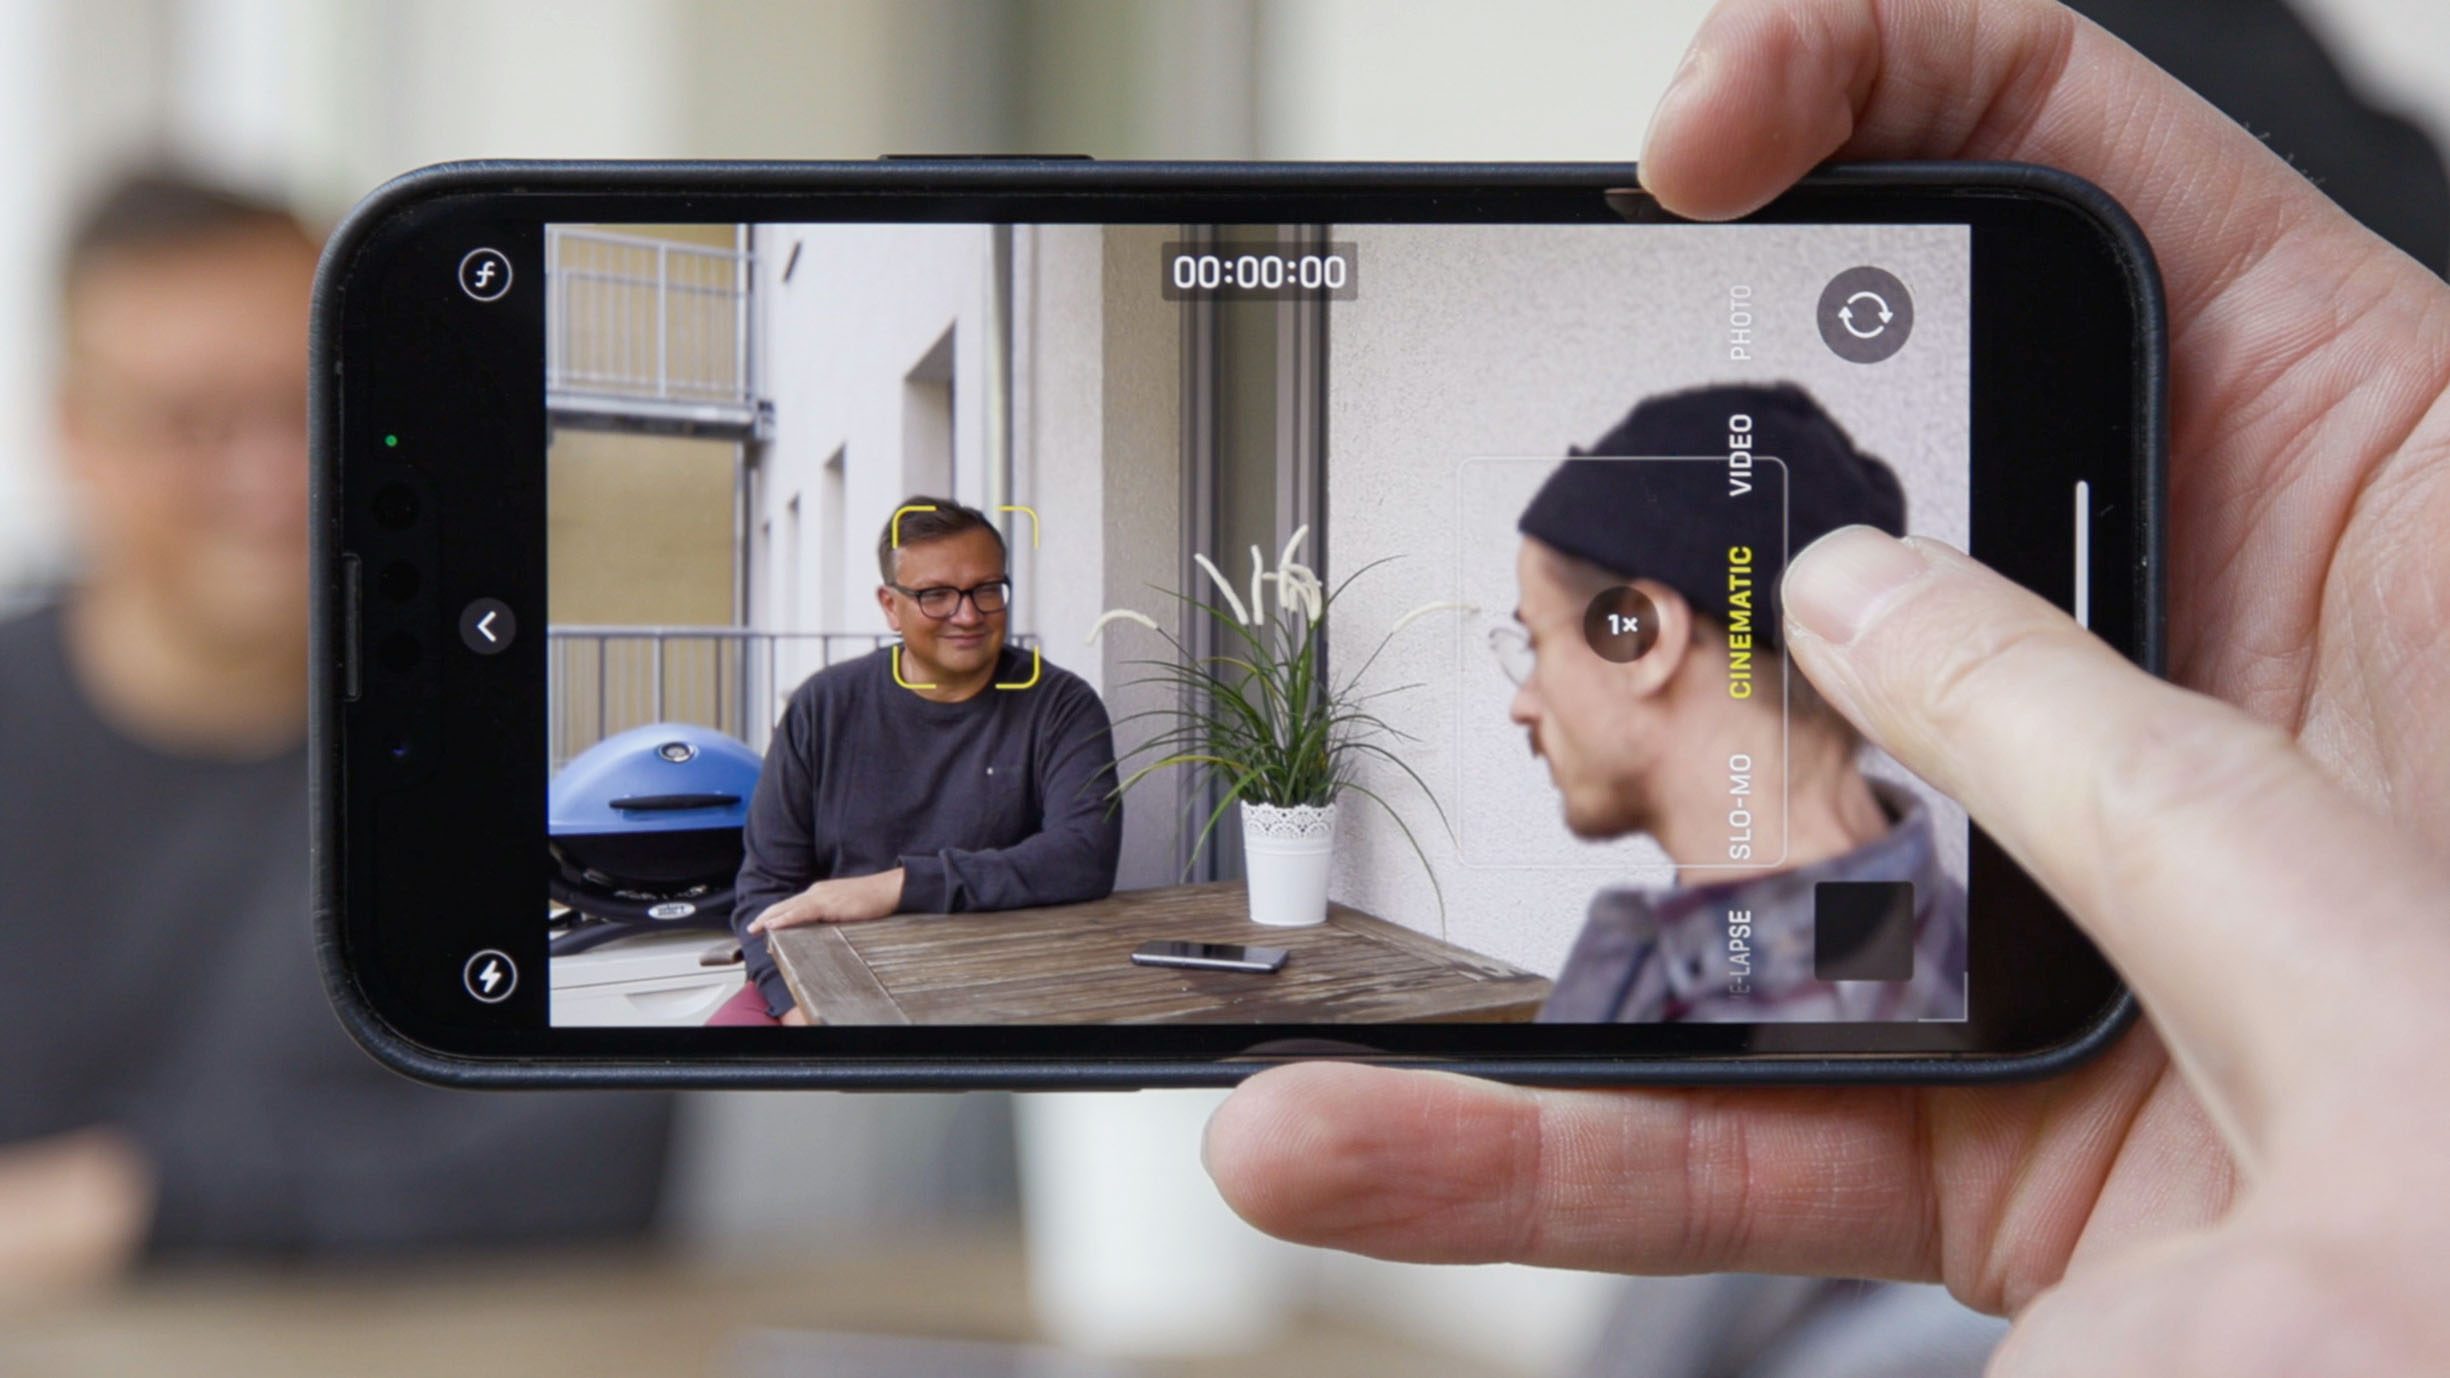 Cinematic mode trên iPhone là tính năng độc đáo giúp bạn quay video với độ phân giải cao và chất lượng hình ảnh sống động. Bên cạnh đó, hiệu ứng bokeh đẹp mắt sẽ giúp video của bạn trở nên chuyên nghiệp và cuốn hút hơn.